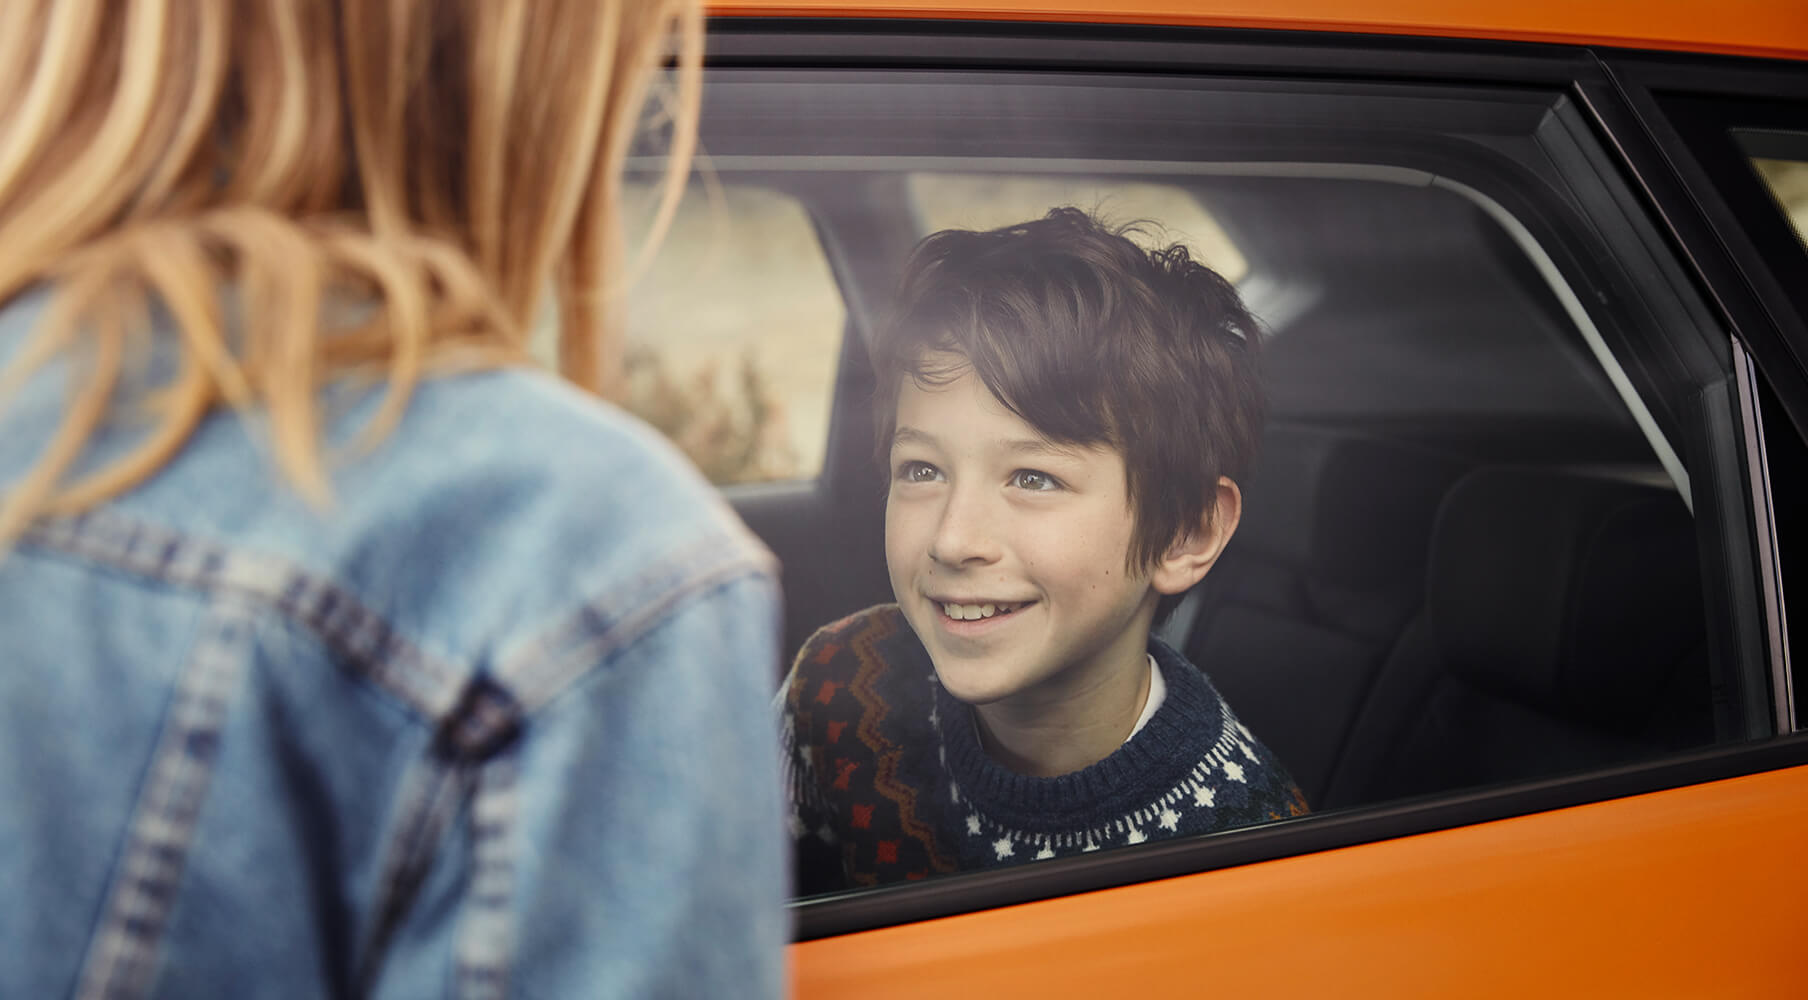 SEAT neuer Service und Wartung – Pannenhilfe –Seitenansicht eines Knaben in einem neuen Fahrzeug, der einer Frau, die draussen steht, zulächelt.